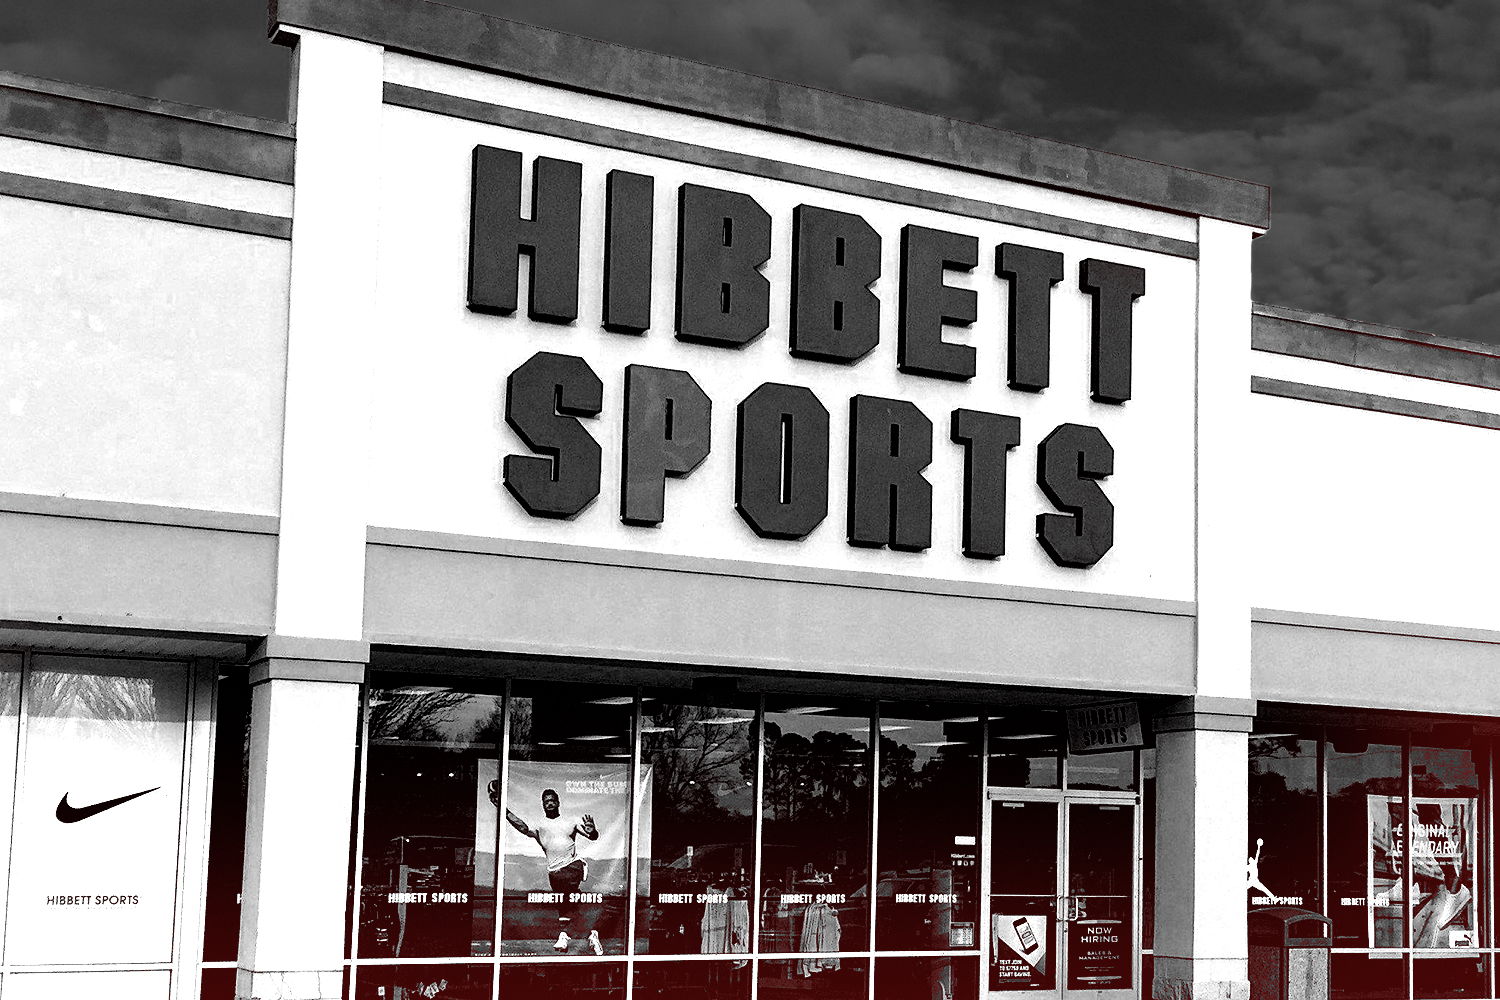 https://frontofficesports.com/wp-content/uploads/2021/08/FOS-8.30-Hibbett-Sports.jpg